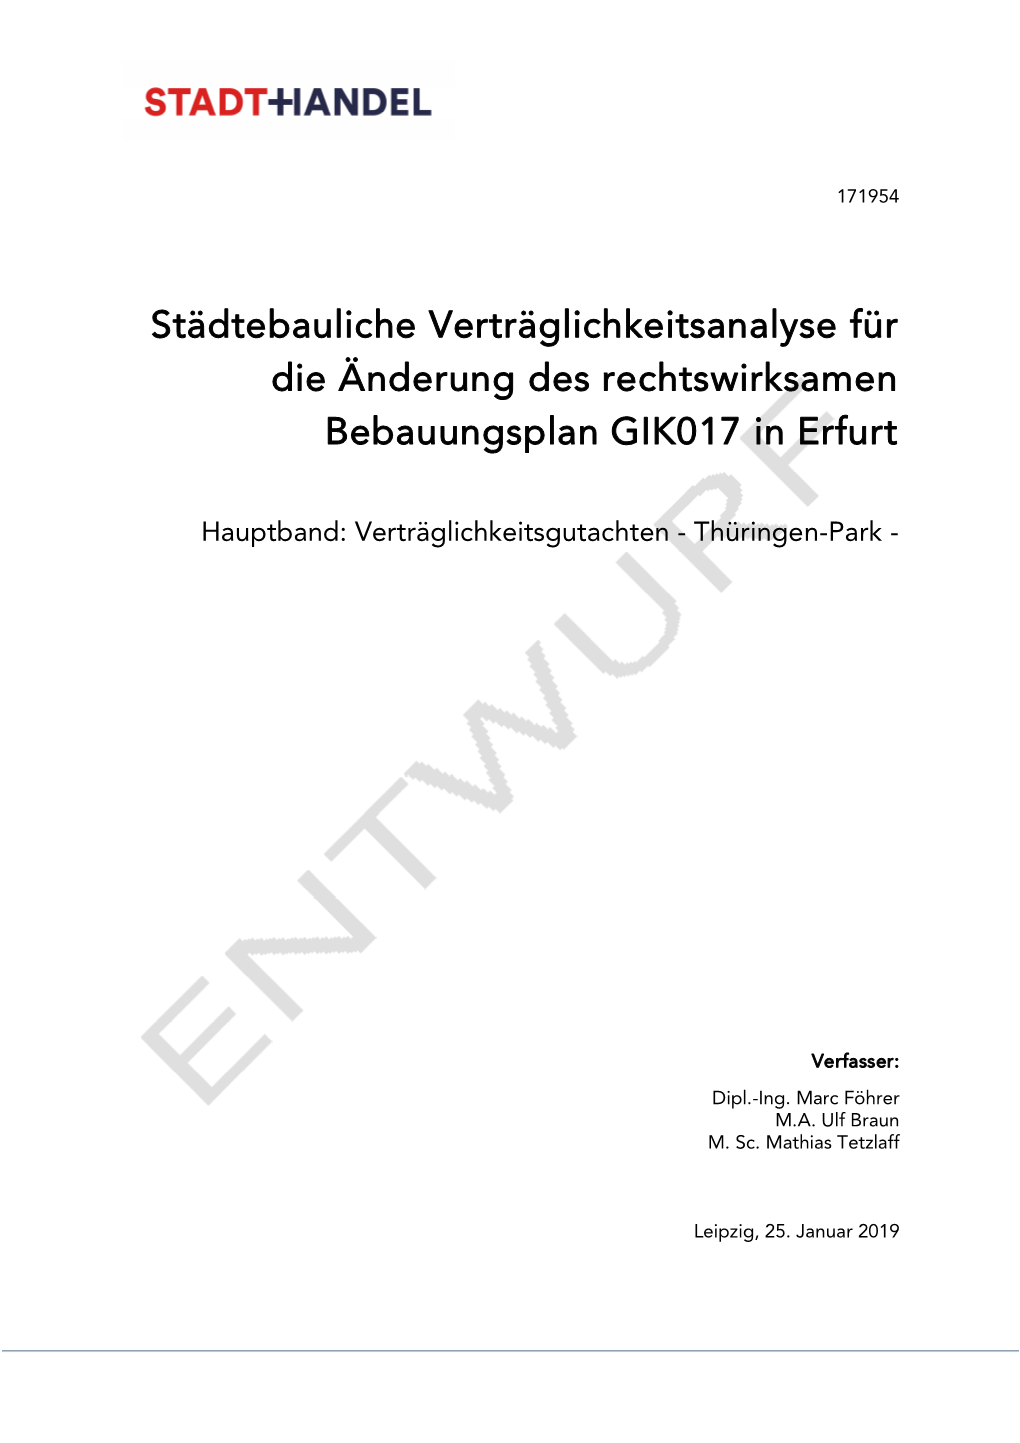 Städtebauliche Verträglichkeitsanalyse Für Die Änderung Des Rechtswirksamen Bebauungsplan GIK017 in Erfurt